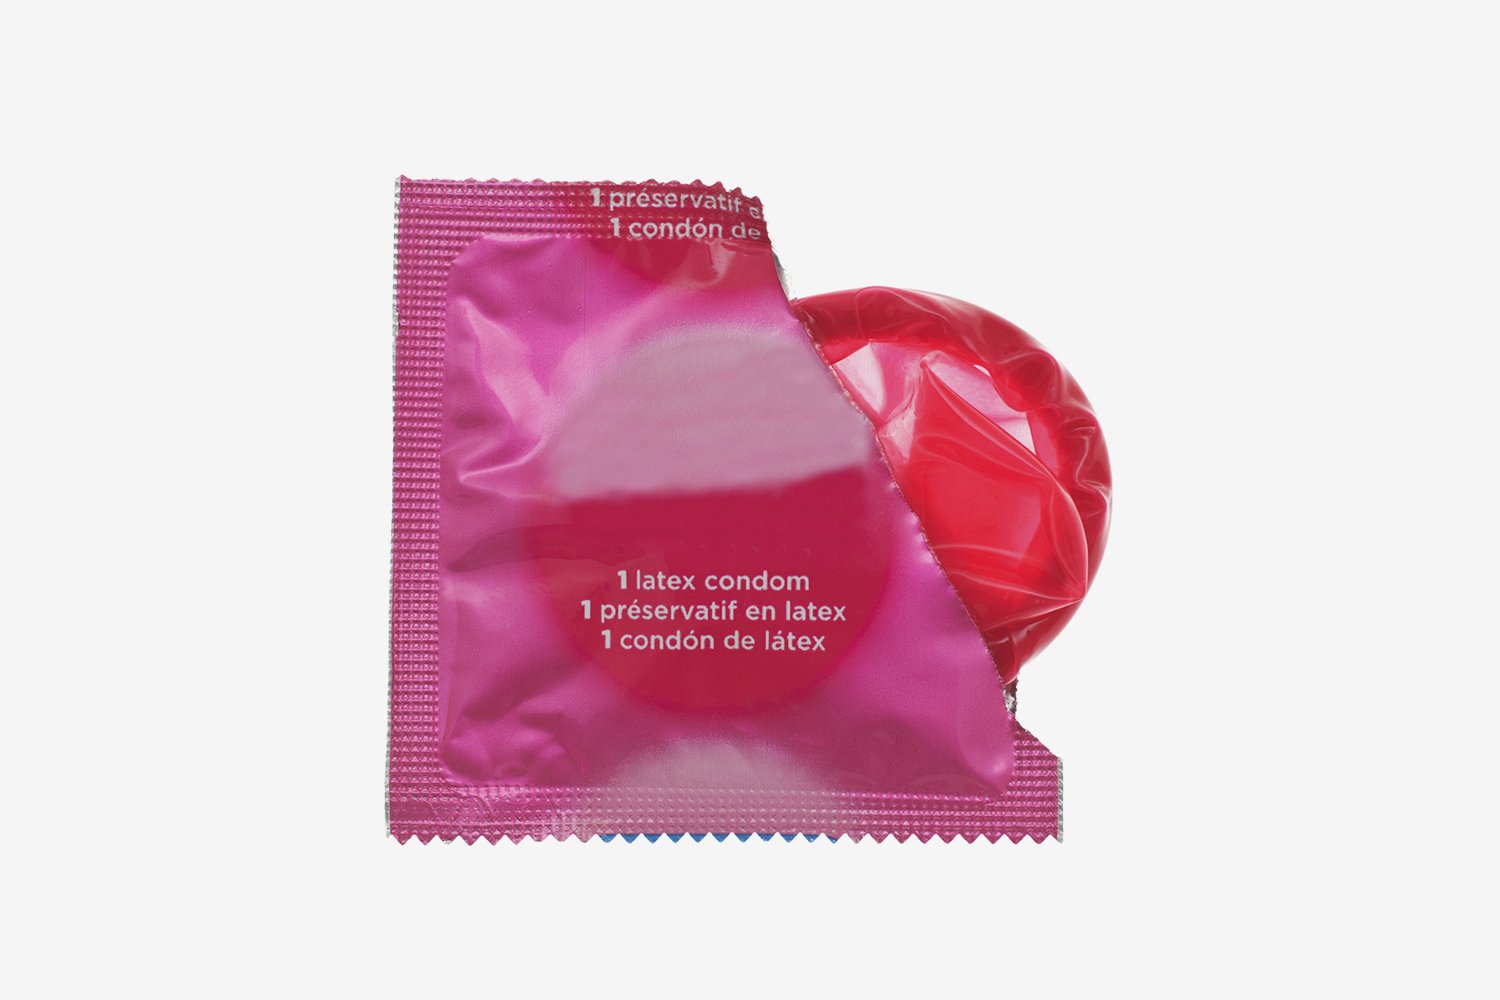 Ощущения не те: ликбез на тему презервативов